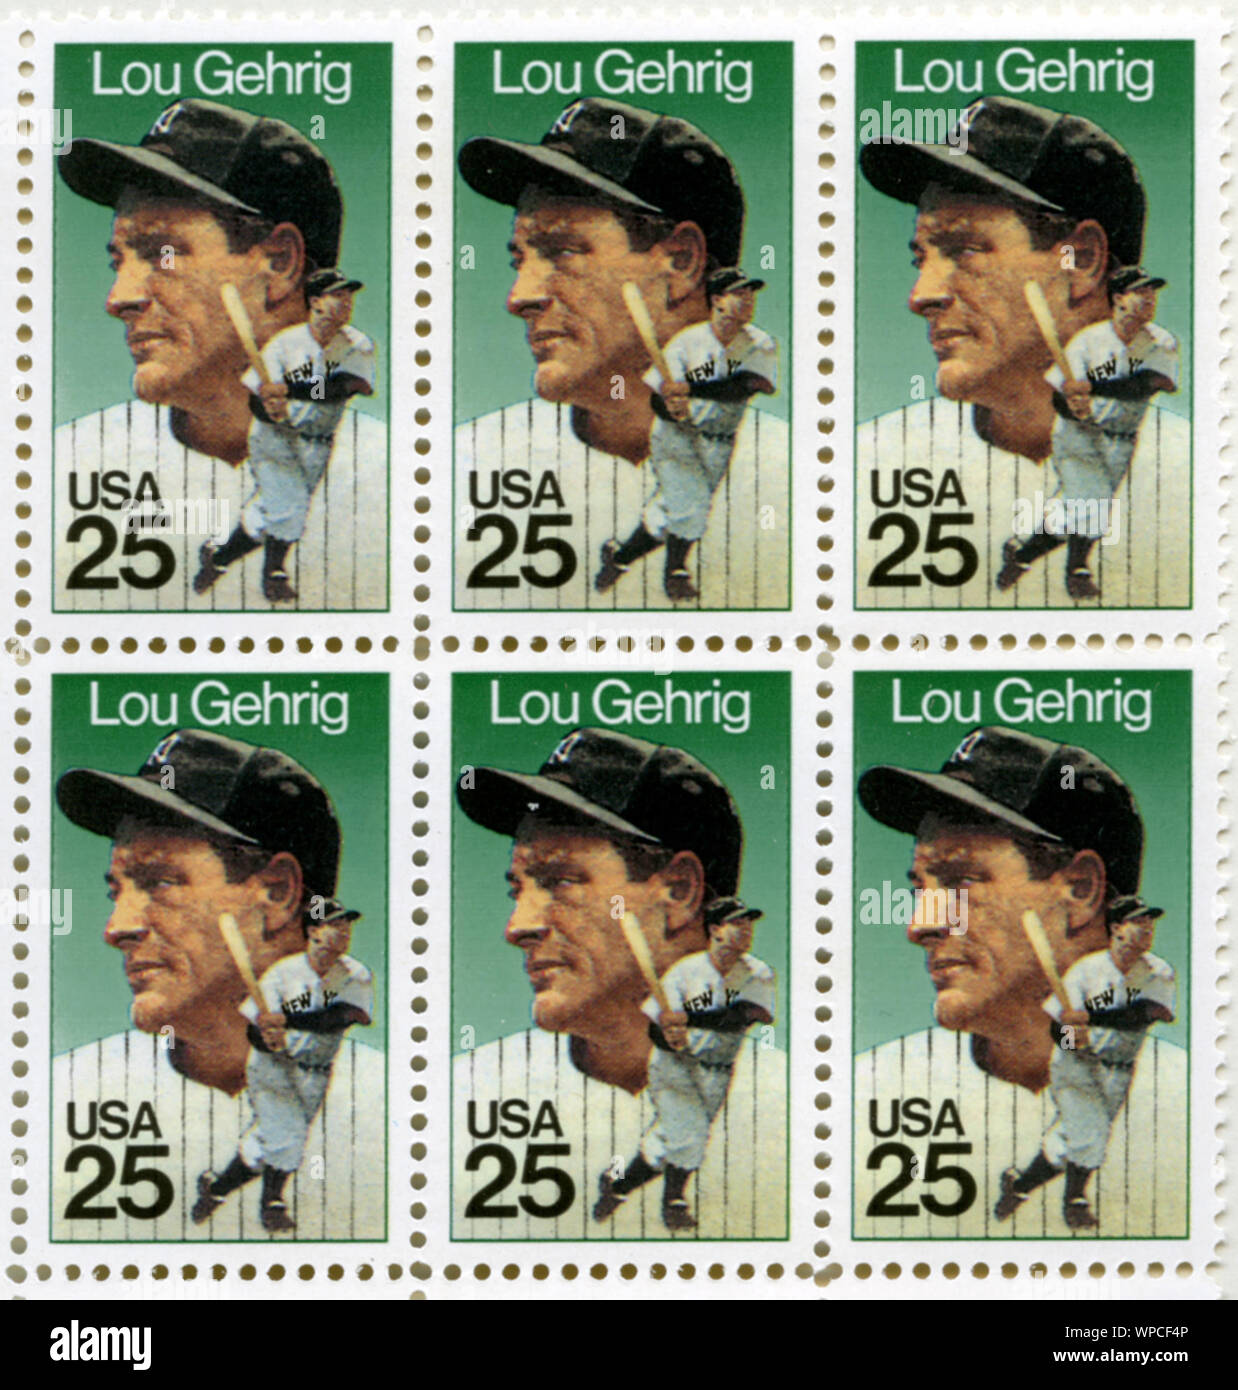 Timbre US baseball honorant grand Lou Gehrig avec les Yankees de New York. Banque D'Images